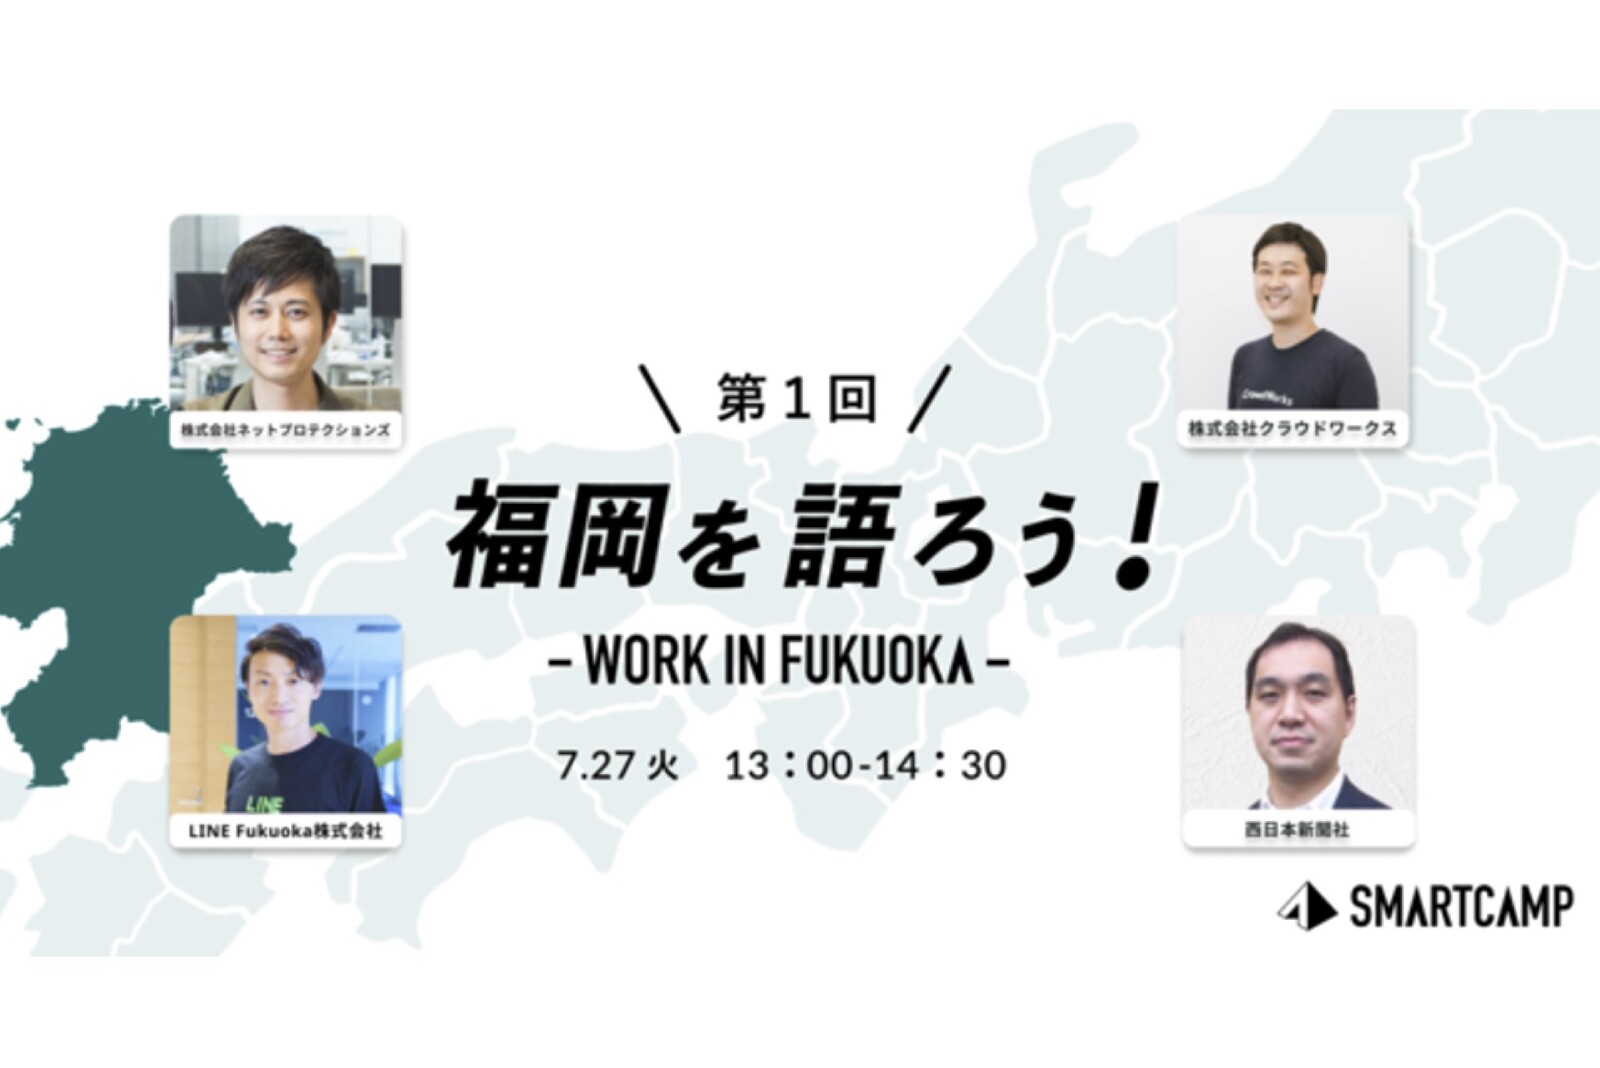 Review＆Sales室の桃田が「福岡を語ろう！WORK IN FUKUOKA」に登壇しました。 サムネイル画像